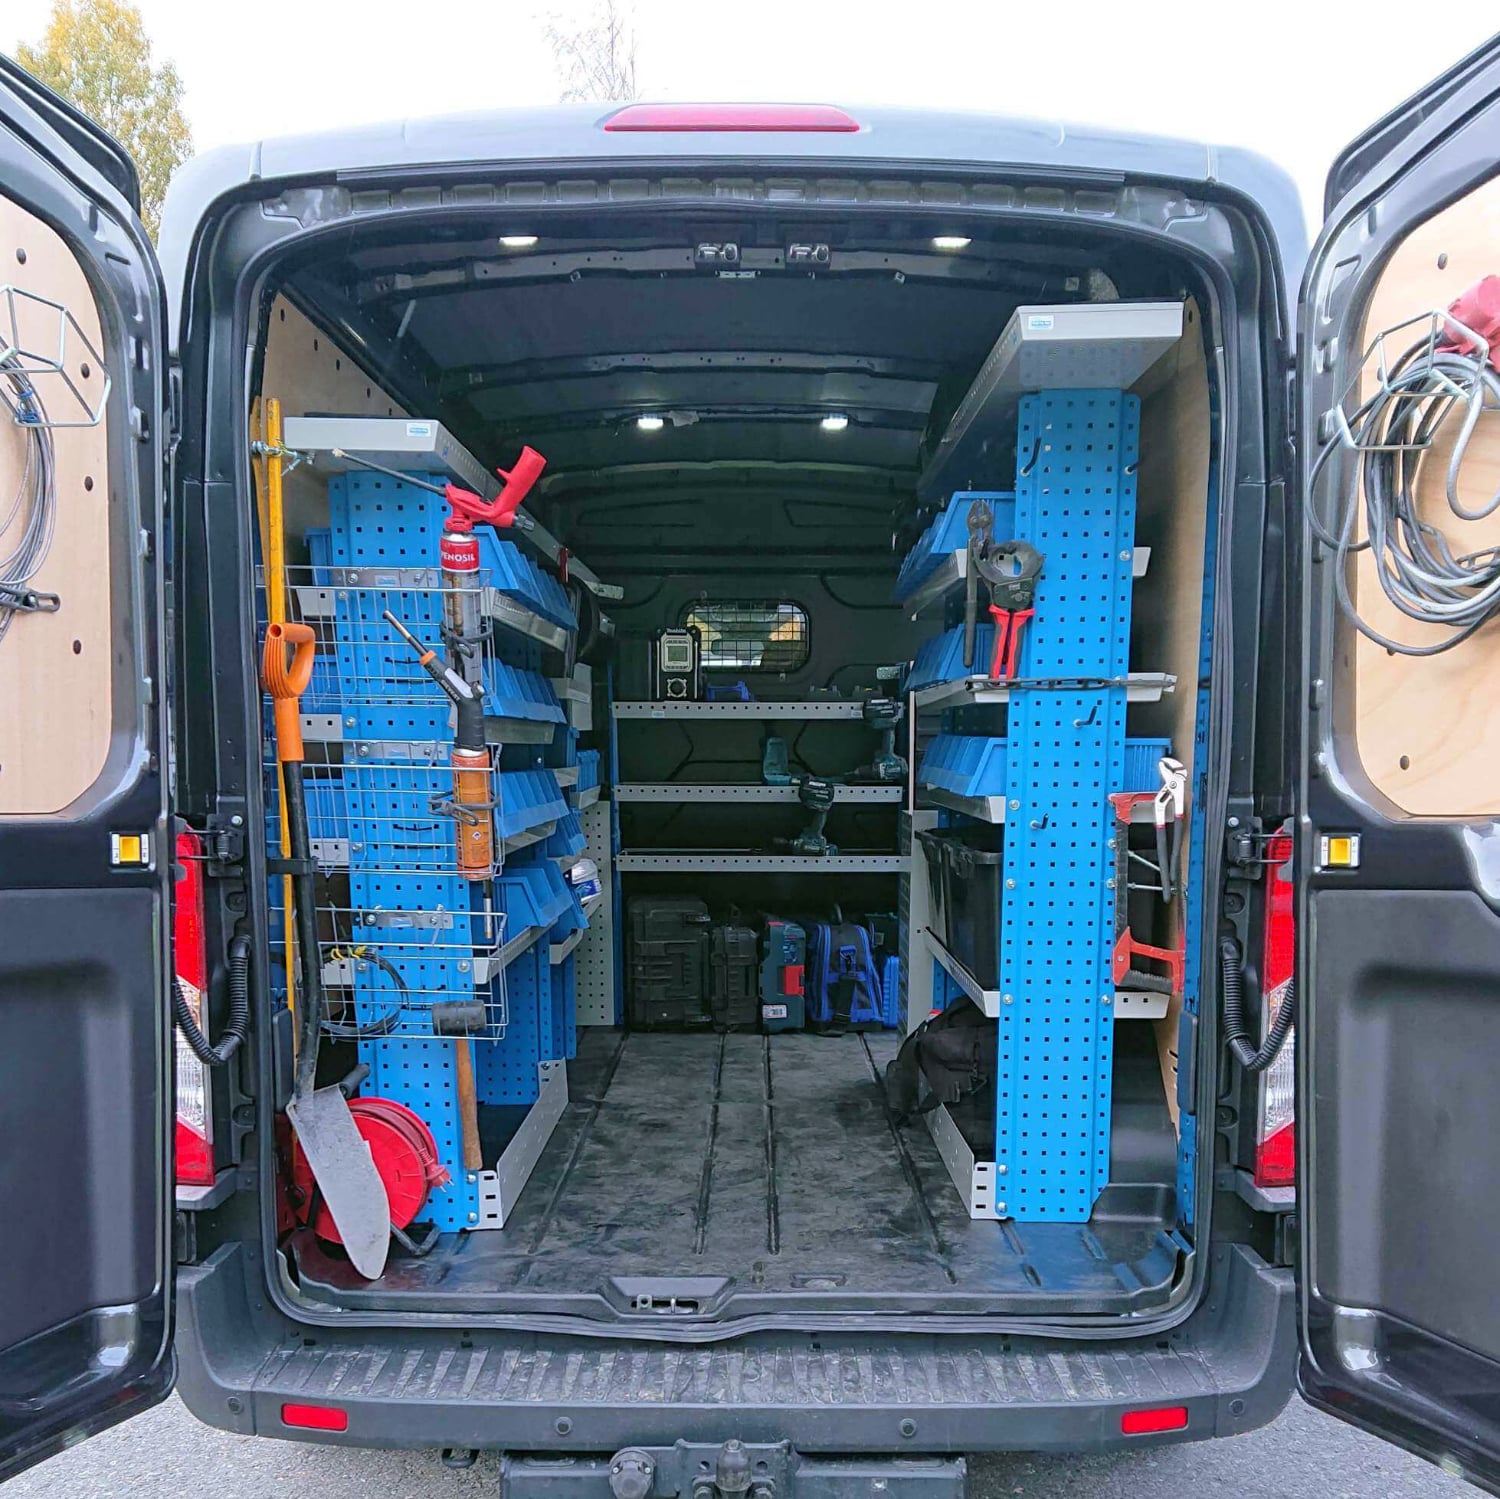 Sahkorepo Oy:n huolto- ja asennuspakettiauto takaovet avoinna ja sisalla nakyy sahkoasennustoihin tarvittavia tyokaluja ja varusteita.